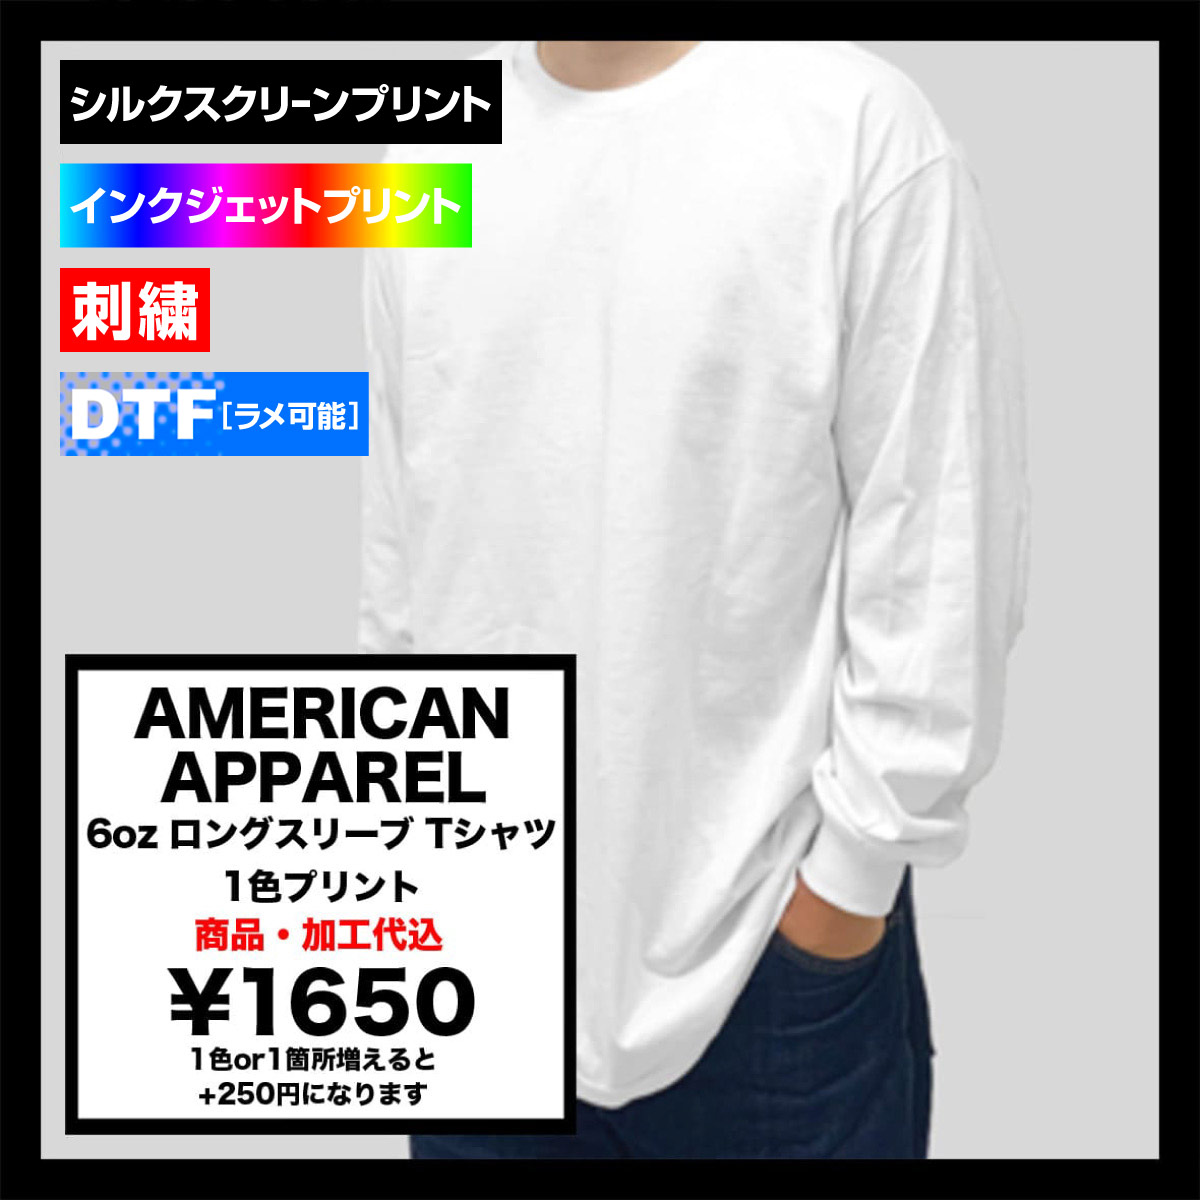 AMERICAN APPAREL アメリカンアパレル 6oz 長袖Tシャツ (品番 AAPP-T1304)